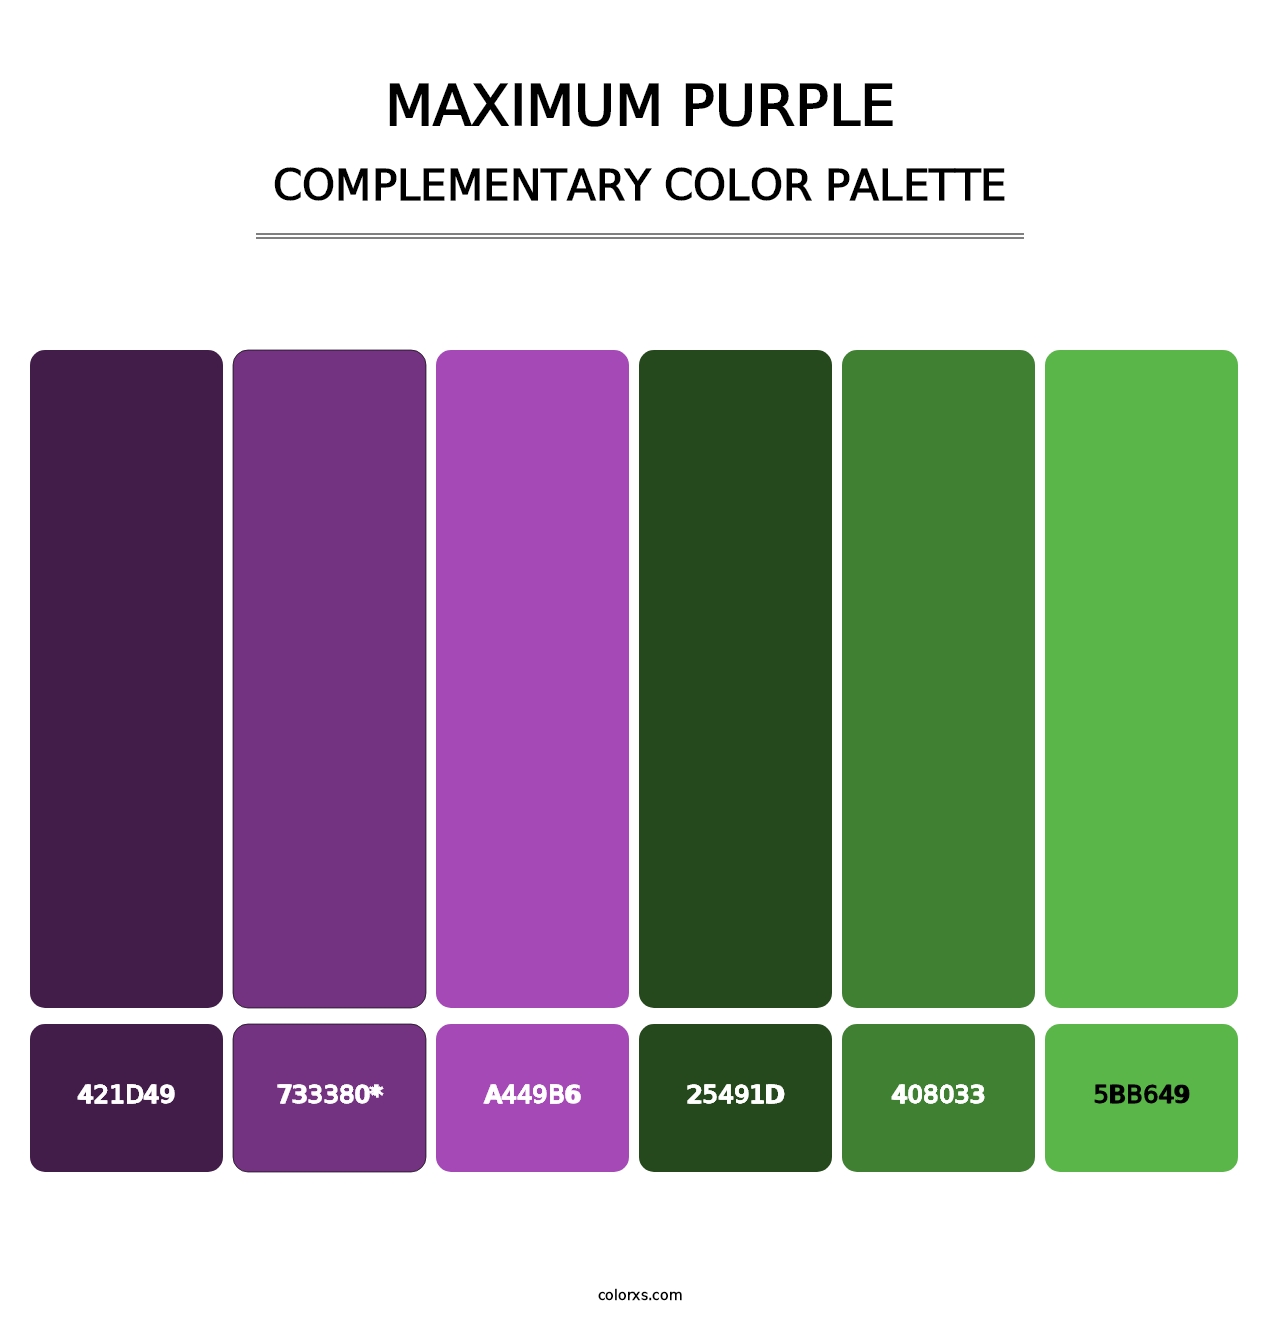 Maximum Purple - Complementary Color Palette